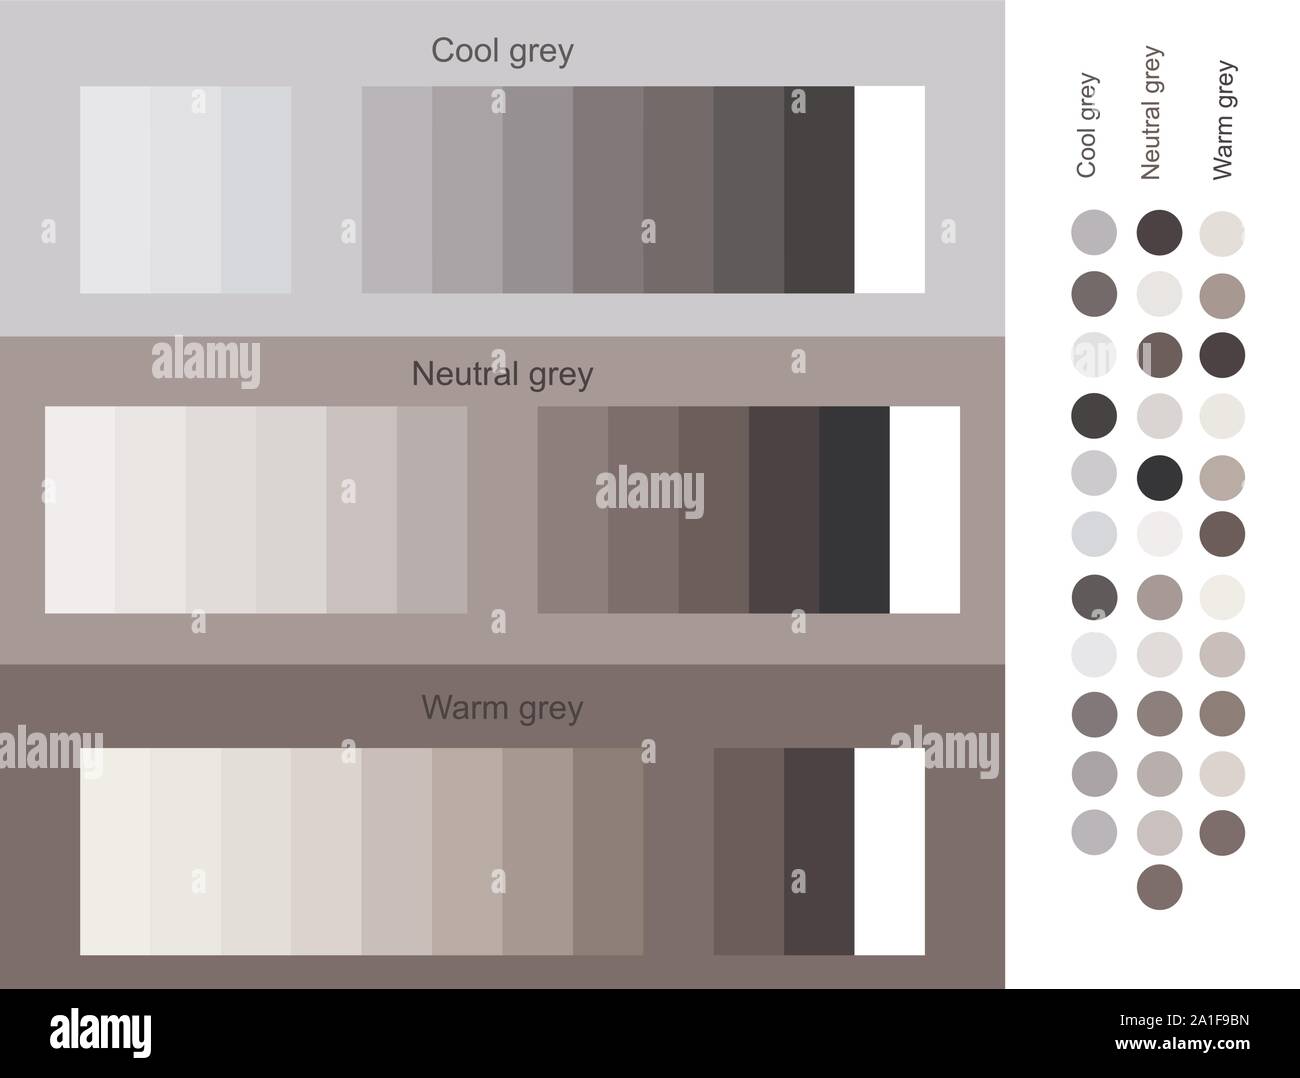 Colore grigio trend toni 2019 set. Cool, neutro, warm gray set smooth gradiente da chiaro a scuro. Unico di tavolozze di colori per i progettisti e gli architetti. Illustrazione Vettoriale